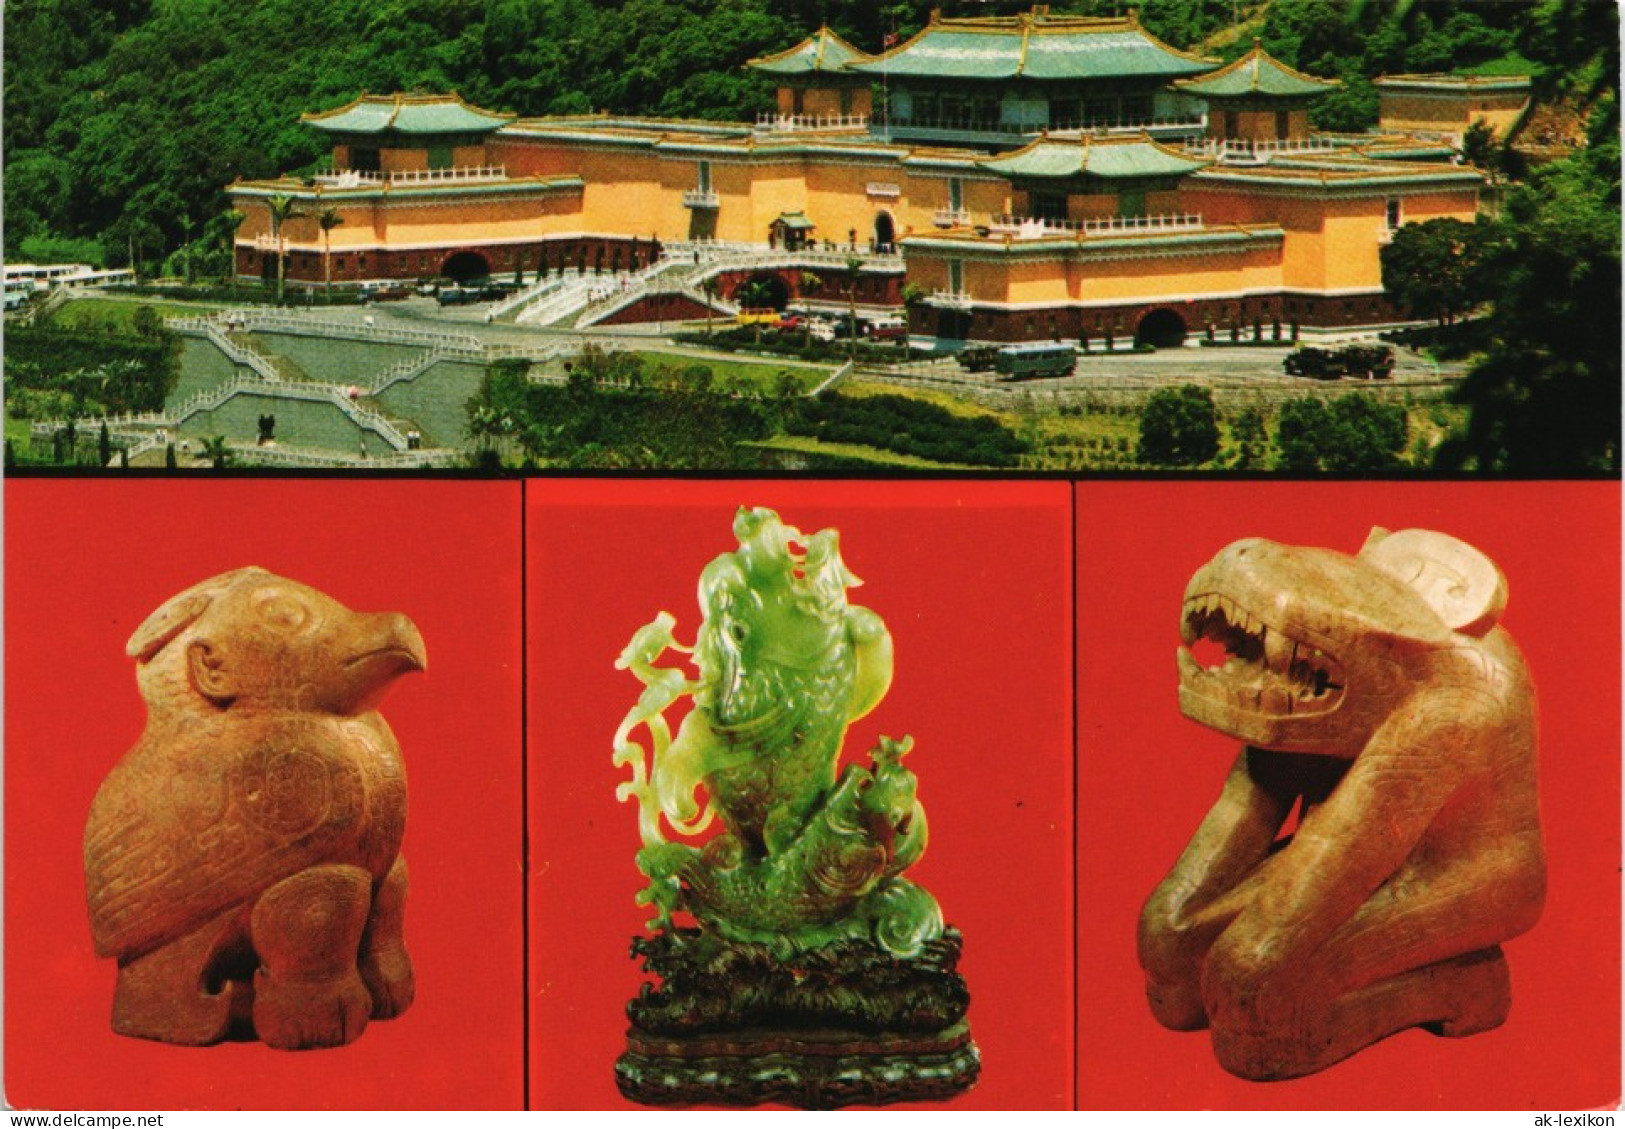 Postcard Taipeh (Taiwan) 臺北市 National Palace Museum Taipei 1980 - Taiwan